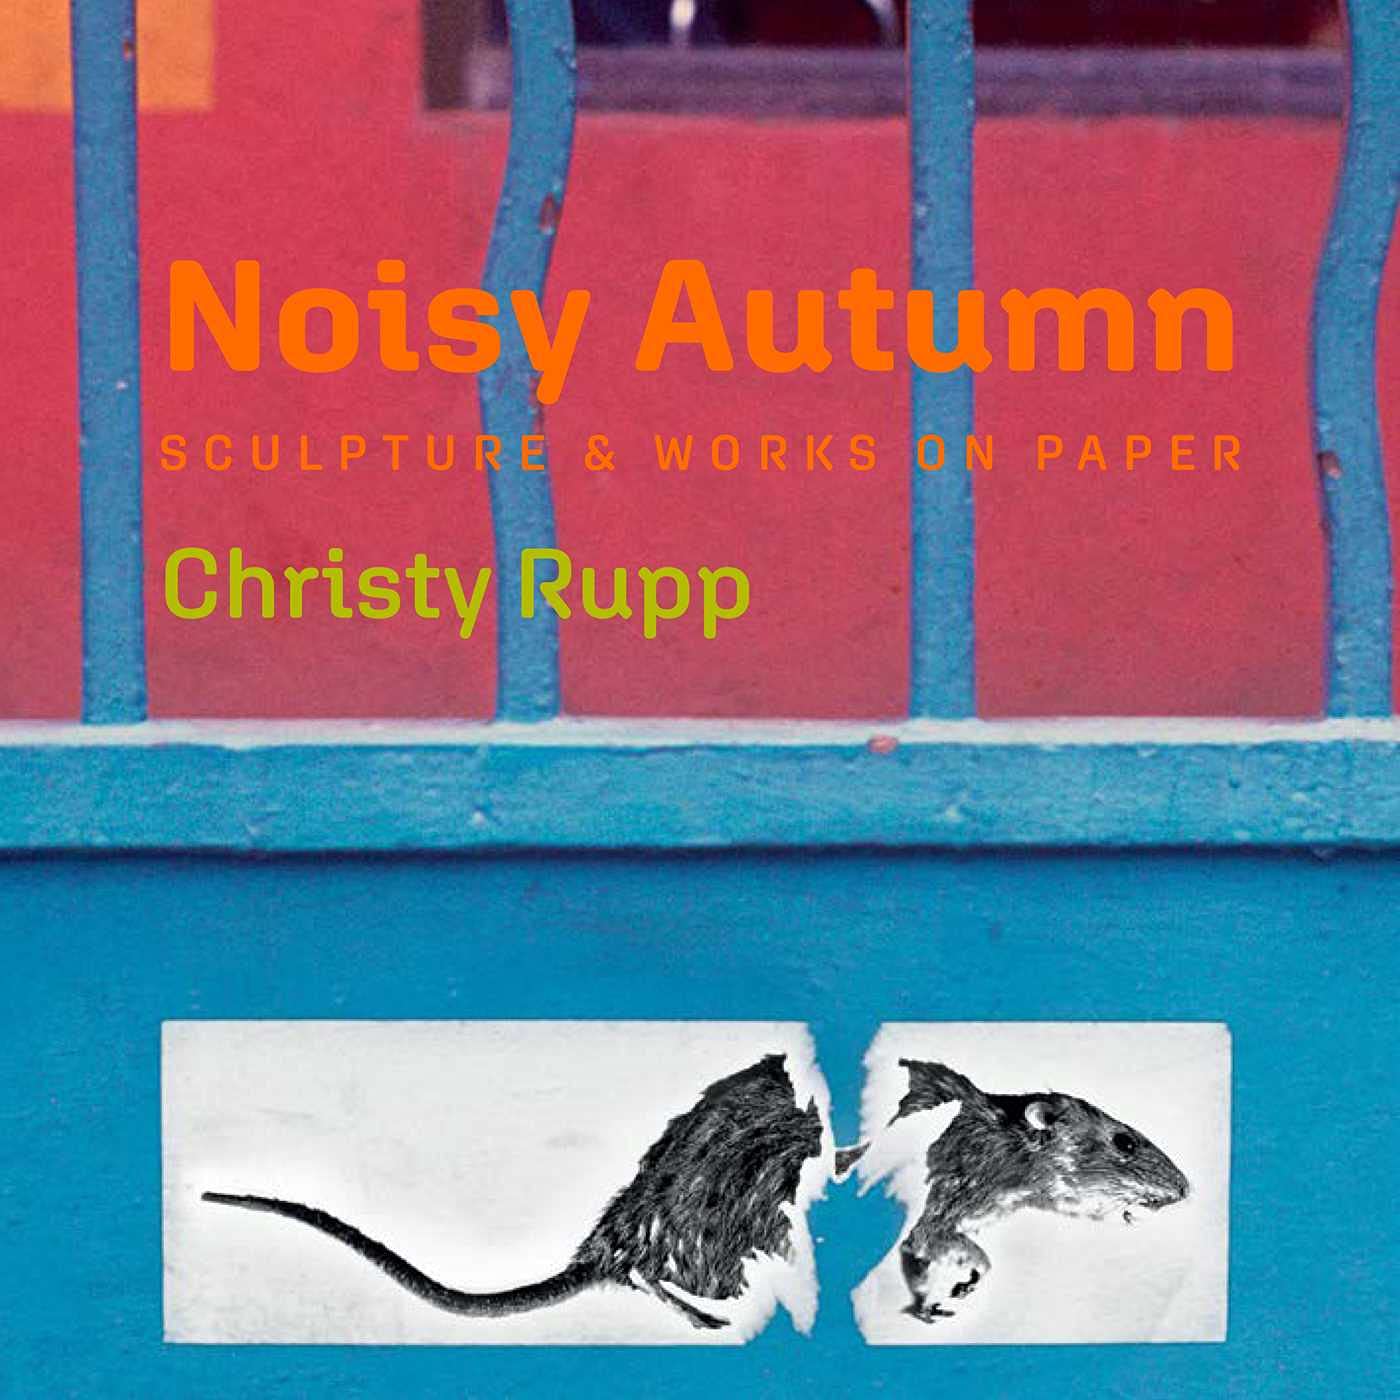 Noisy Autumn: Sculpture & Works on Paper